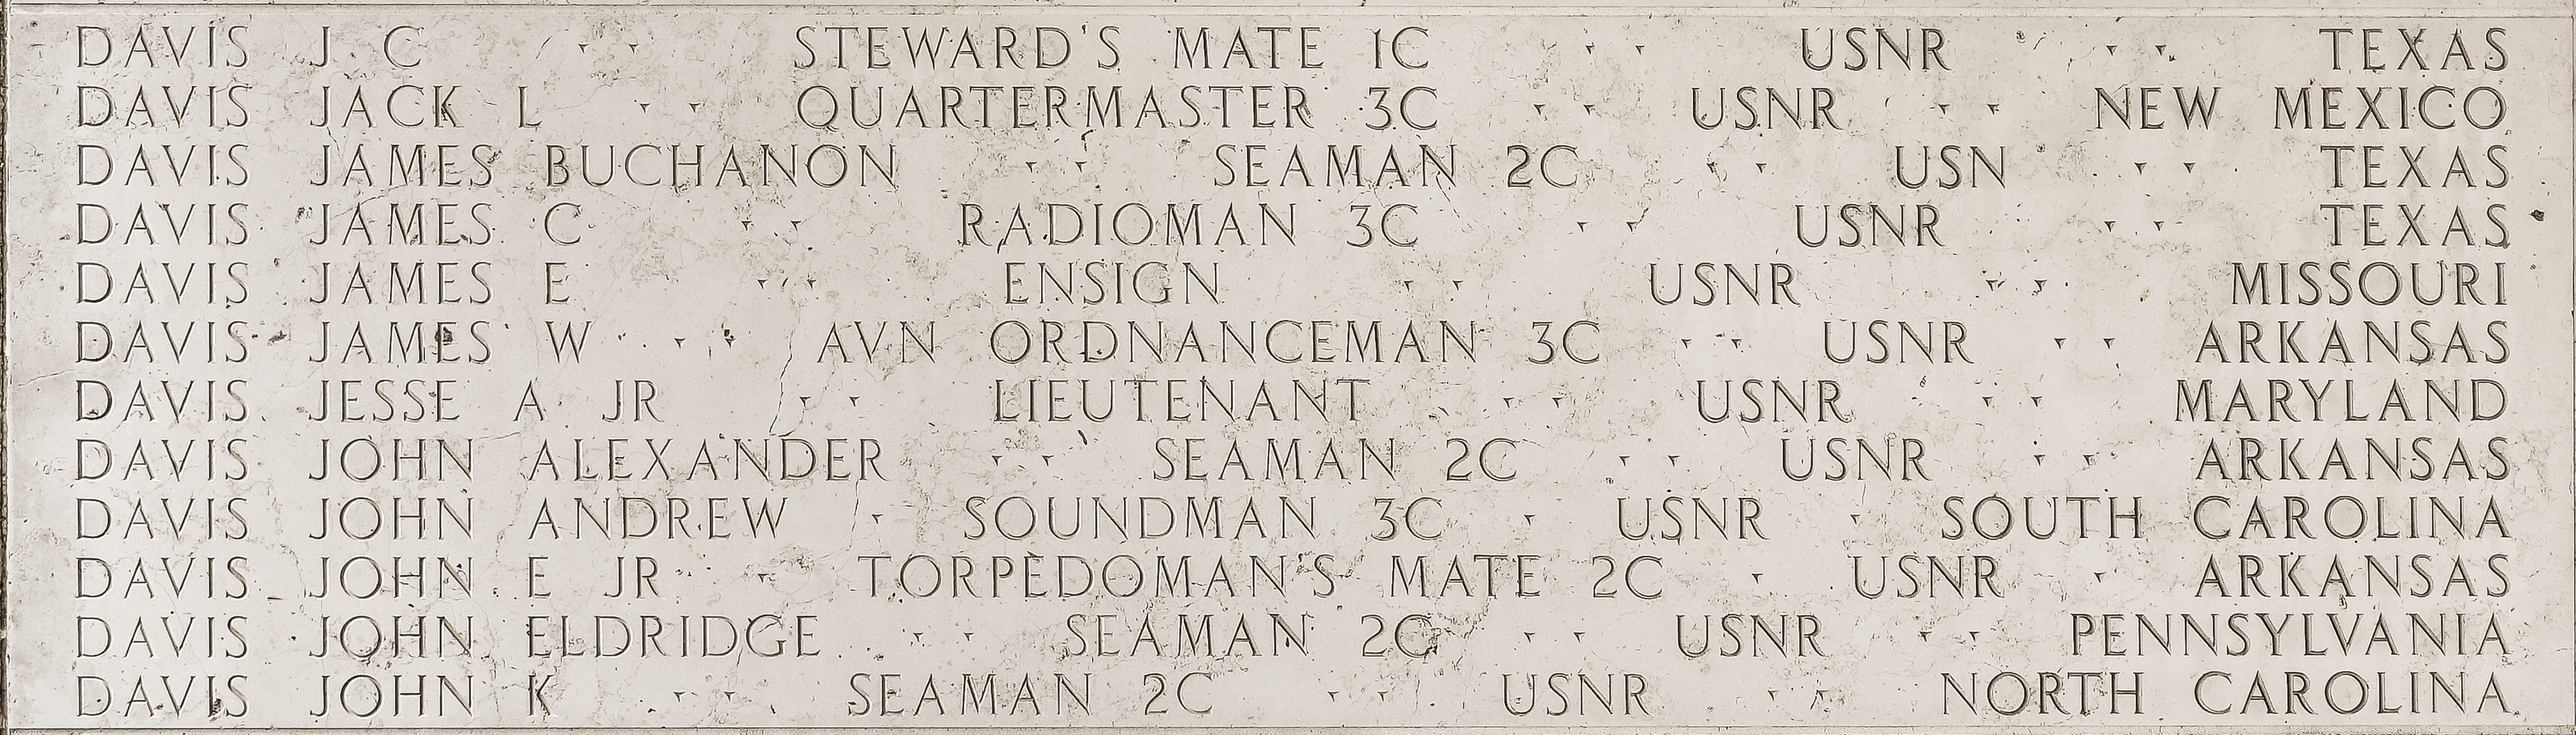 John E. Davis, Torpedoman's Mate Second Class